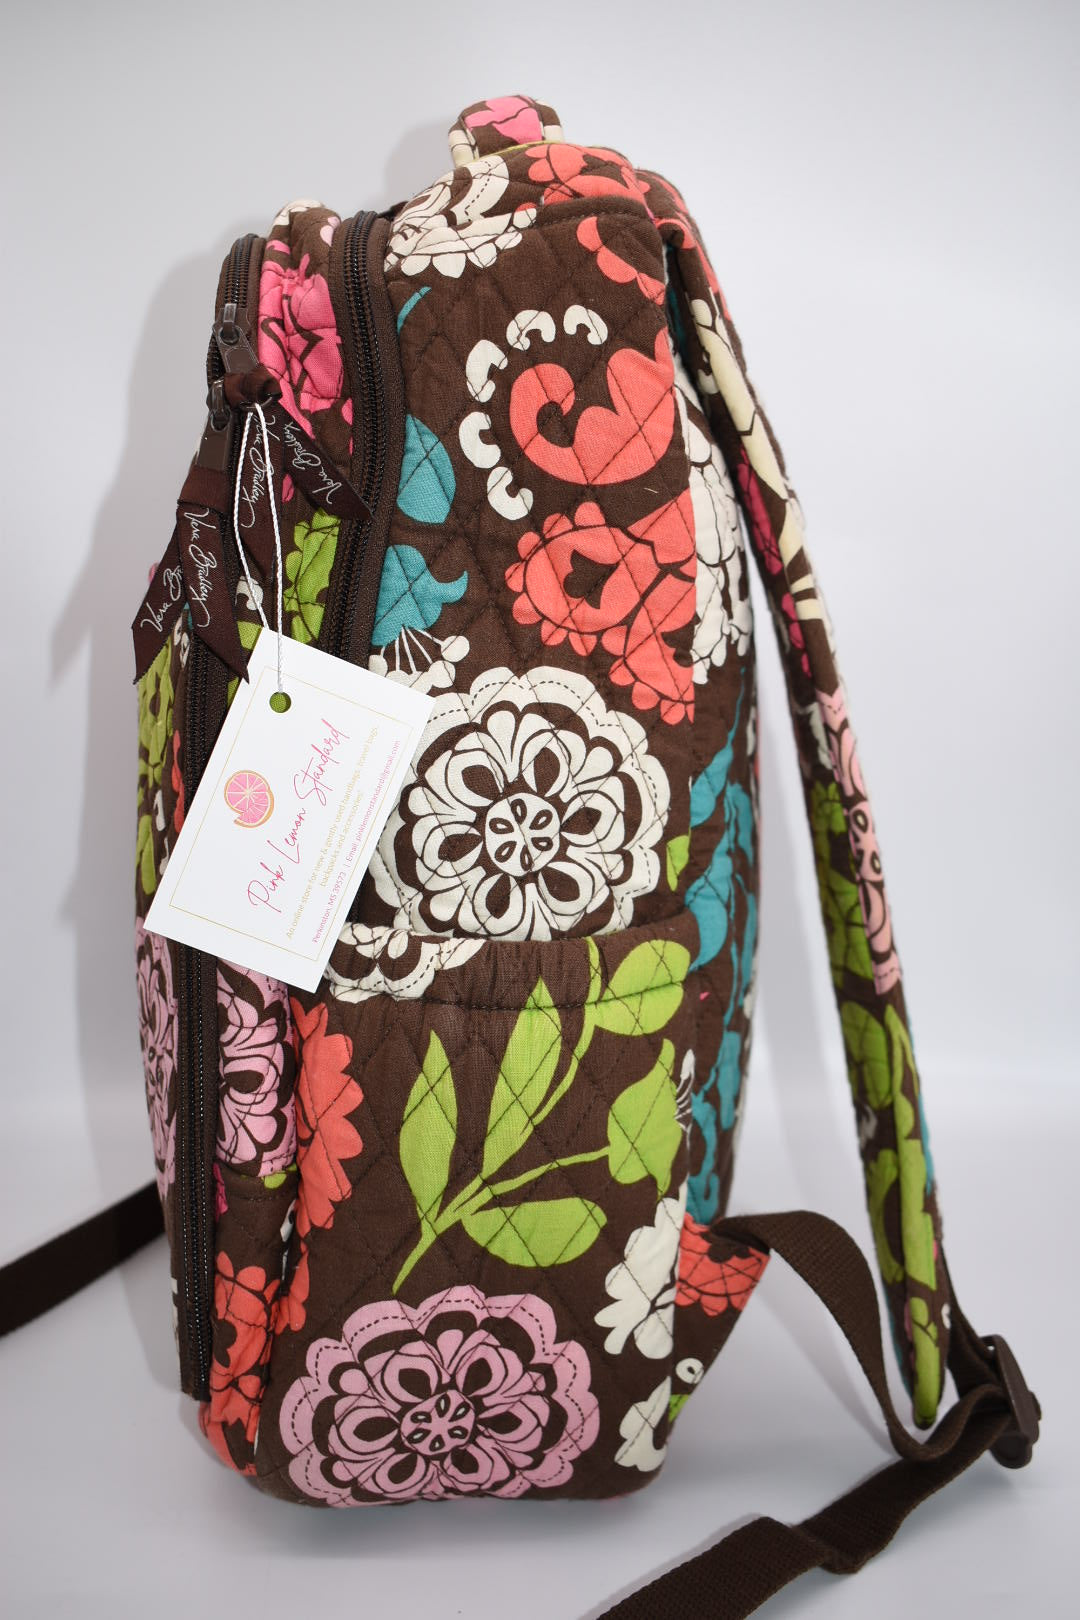 Vera Bradley Uptown Baby Diaper Tote Bag in Exotic Floral Grid Patte –  Pink Lemon Standard